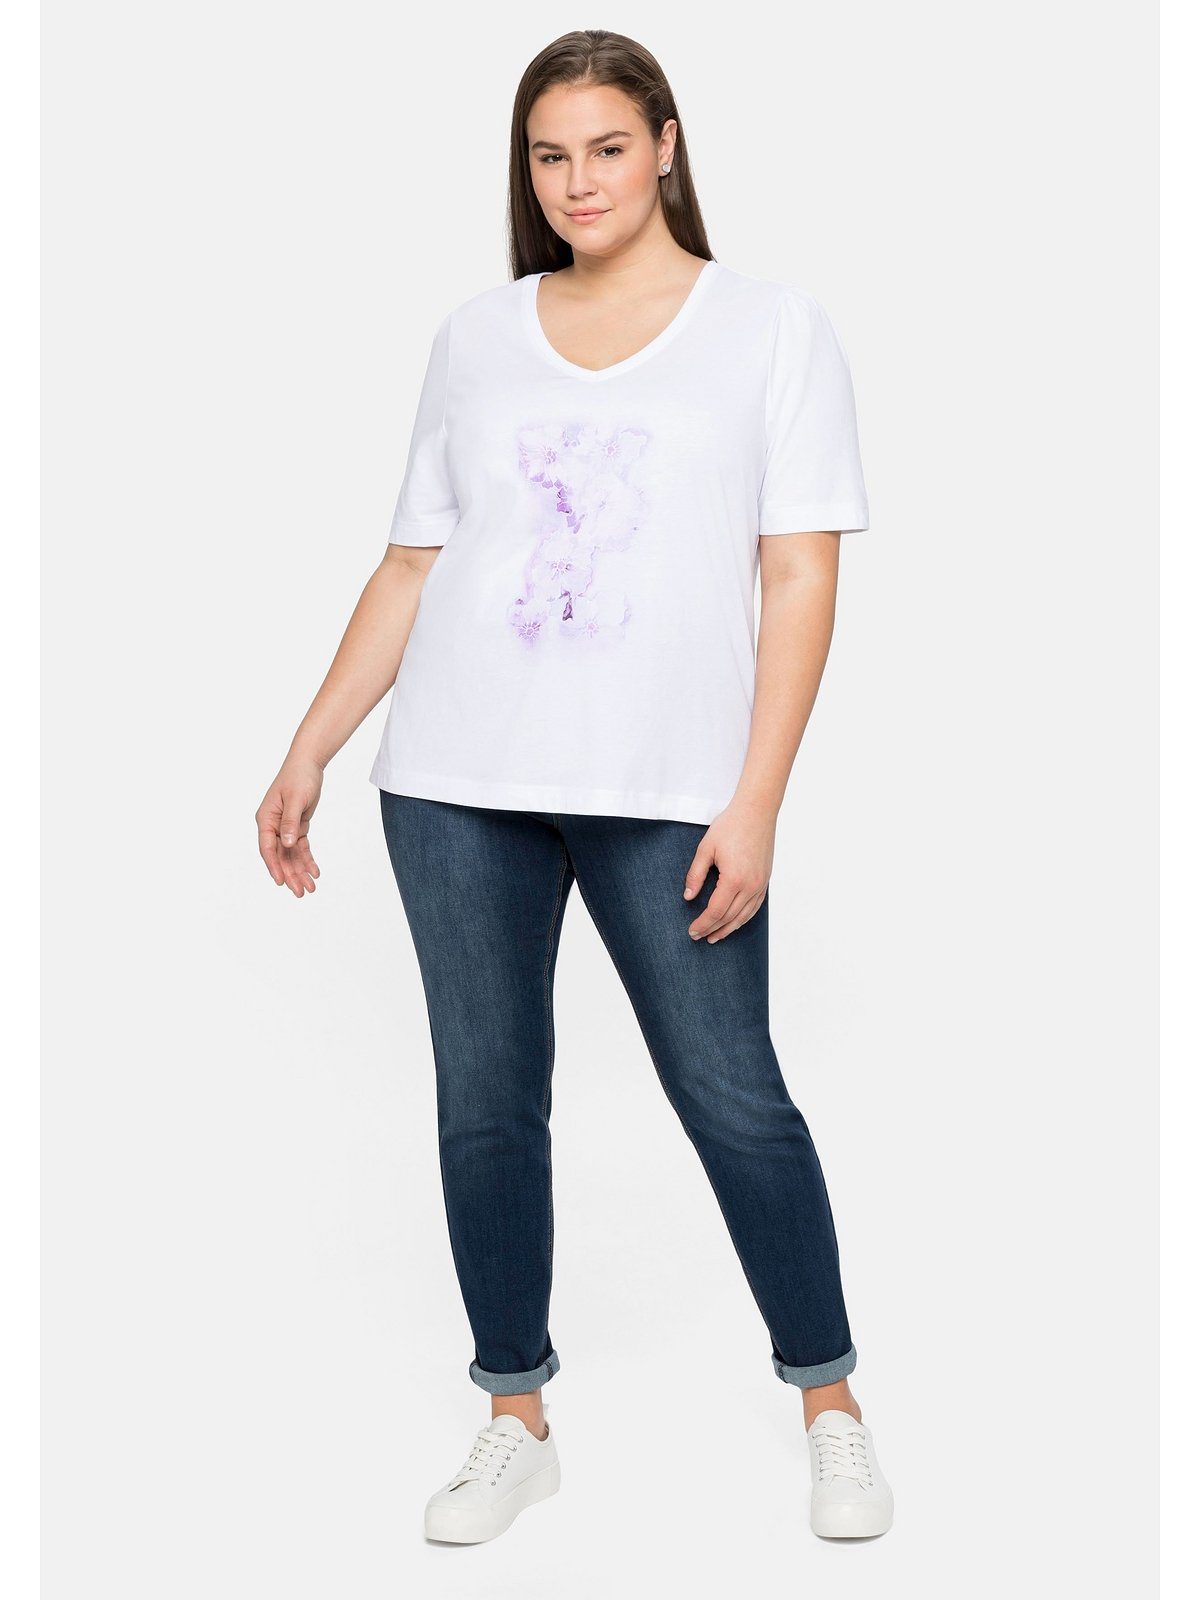 Sheego T-Shirt Große aus weiß Baumwolle mit Frontdruck Größen